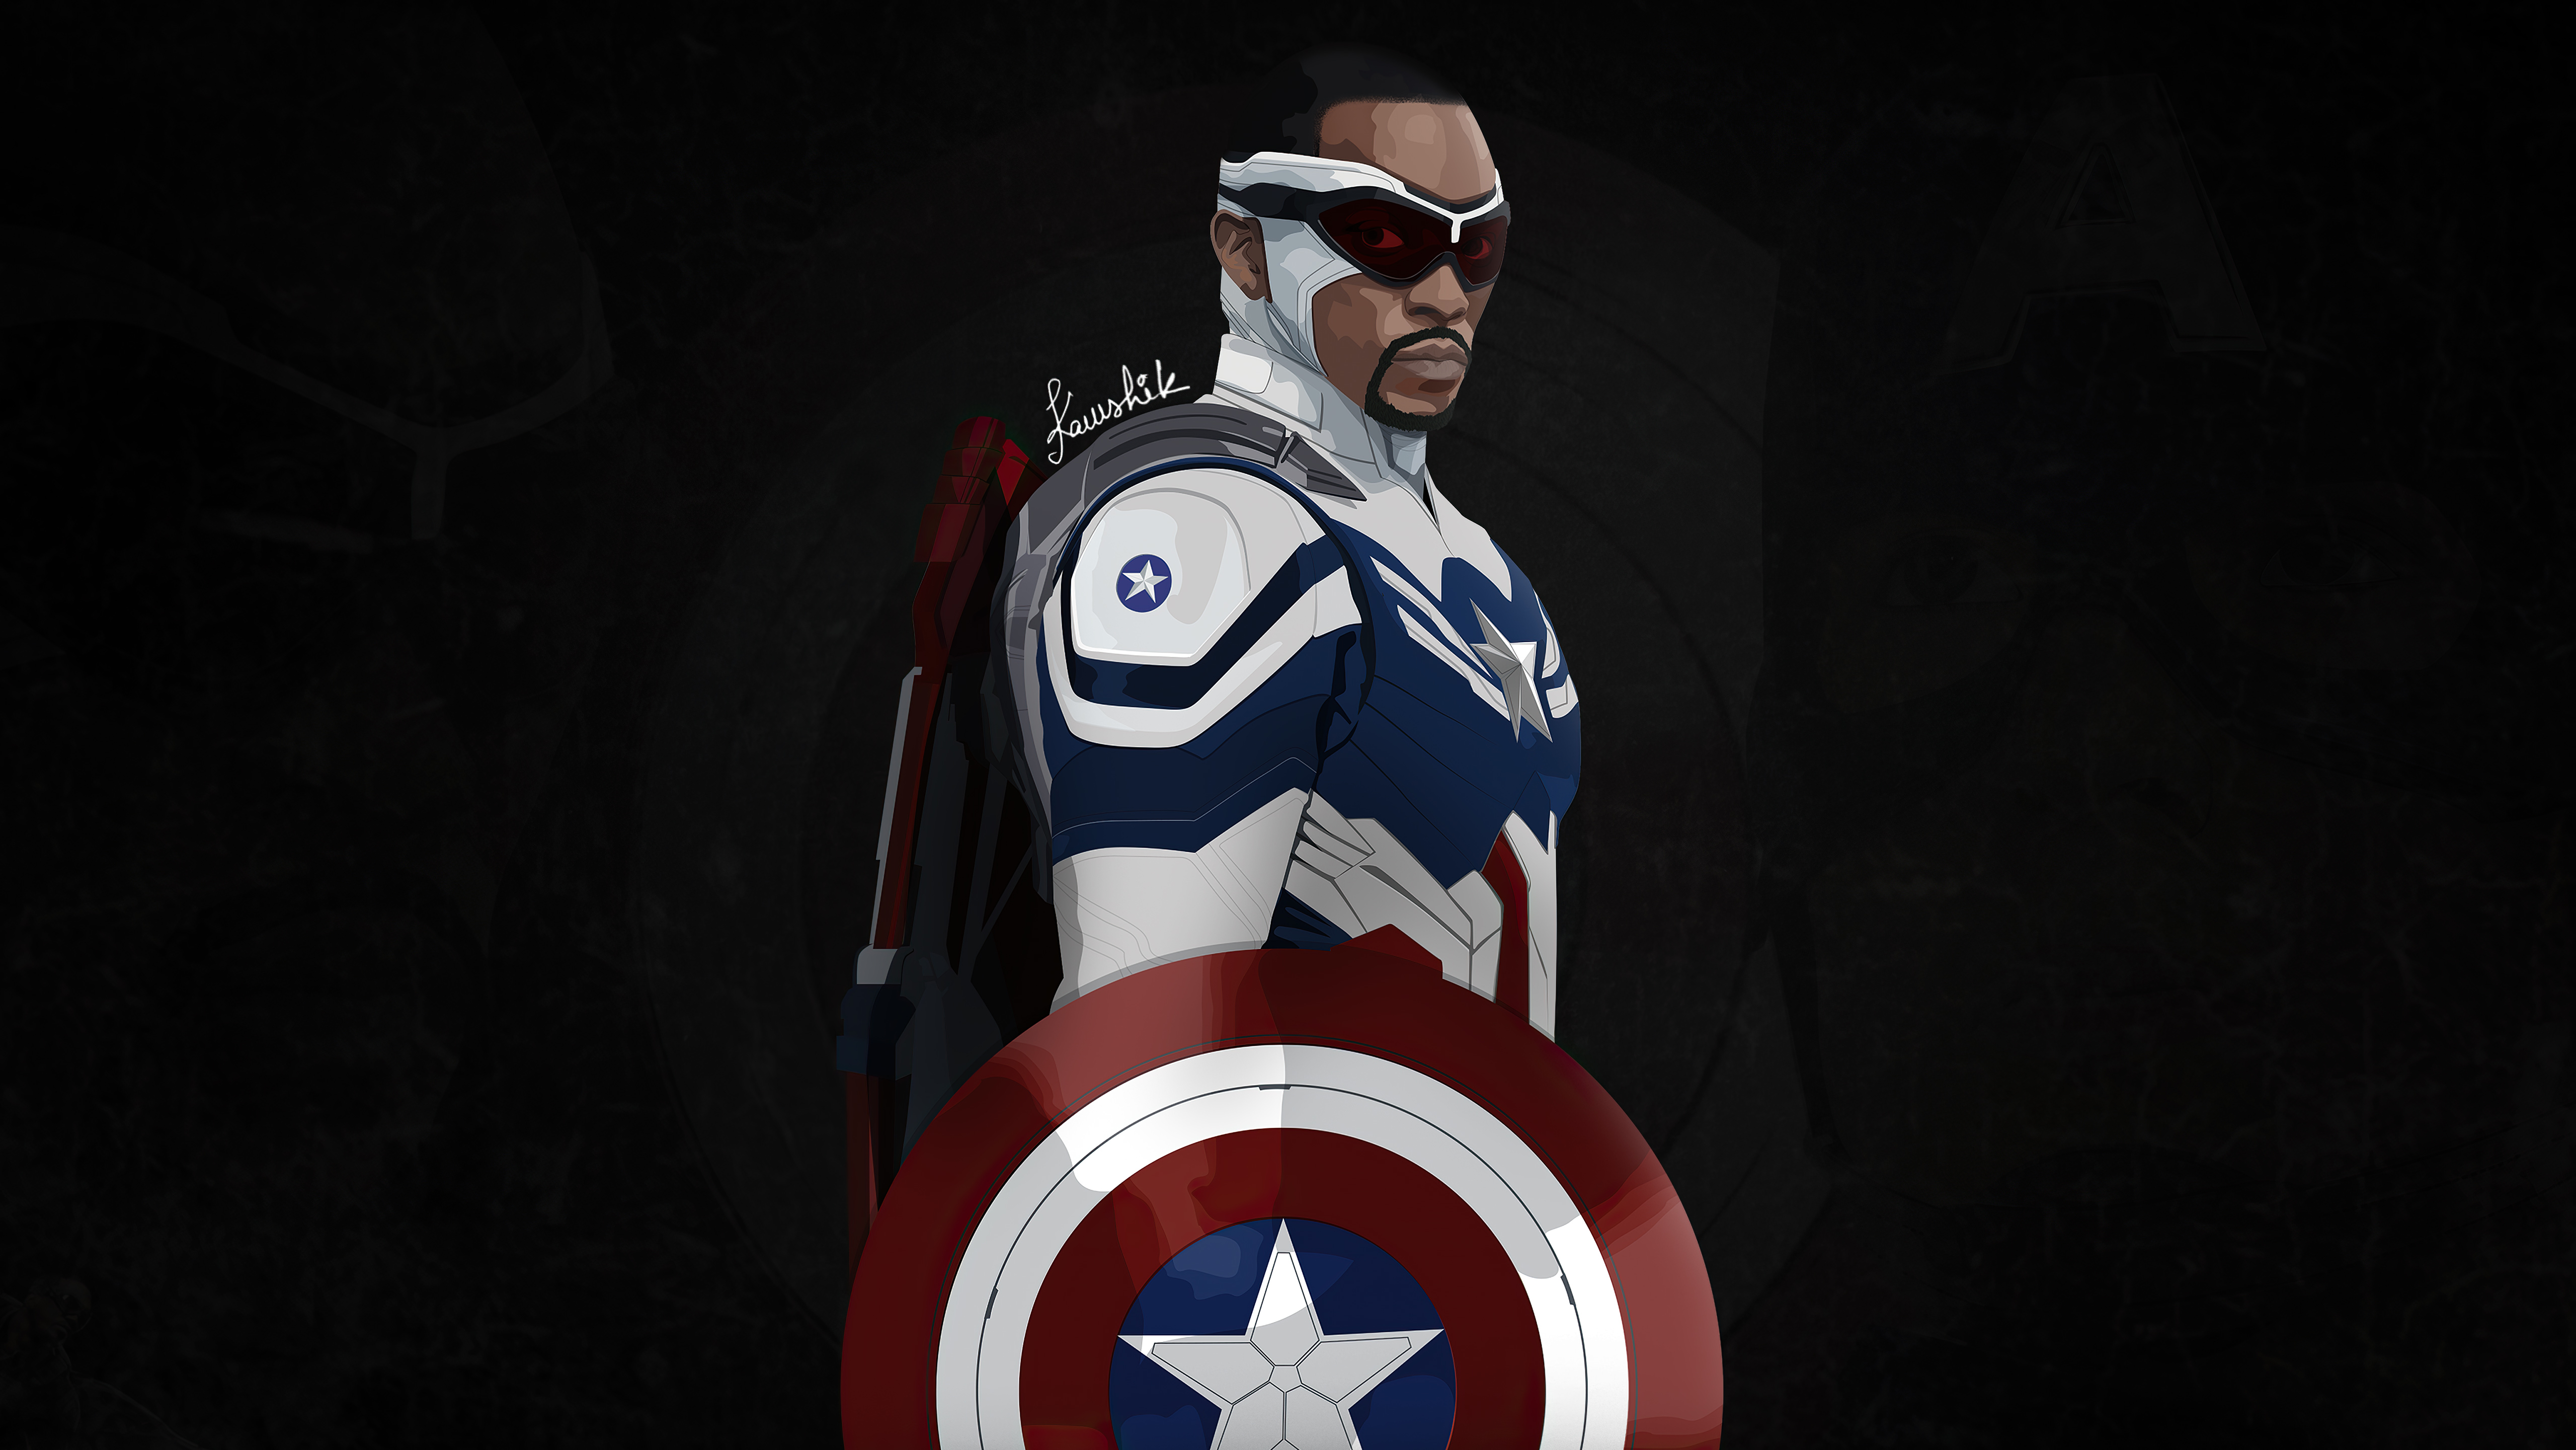 Wallpaper ID 80952  captain america hd 4k 5k artwork superheroes  free download